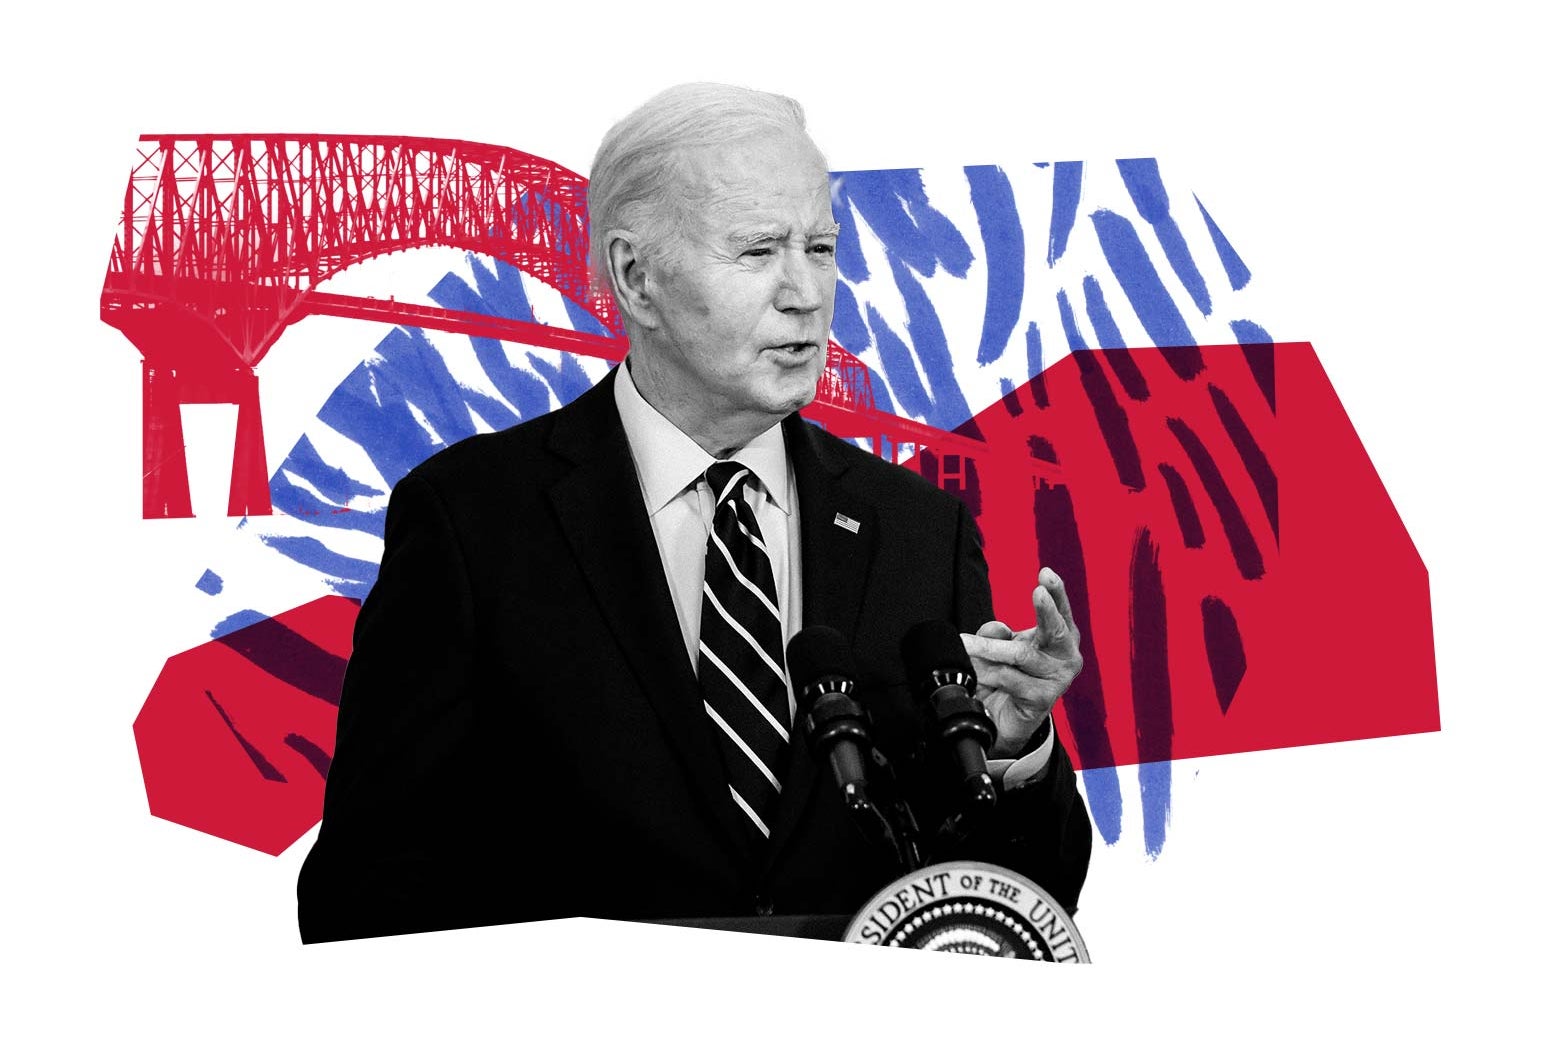 Joe Biden speaks, smiles, and gestures from behind a lectern. 